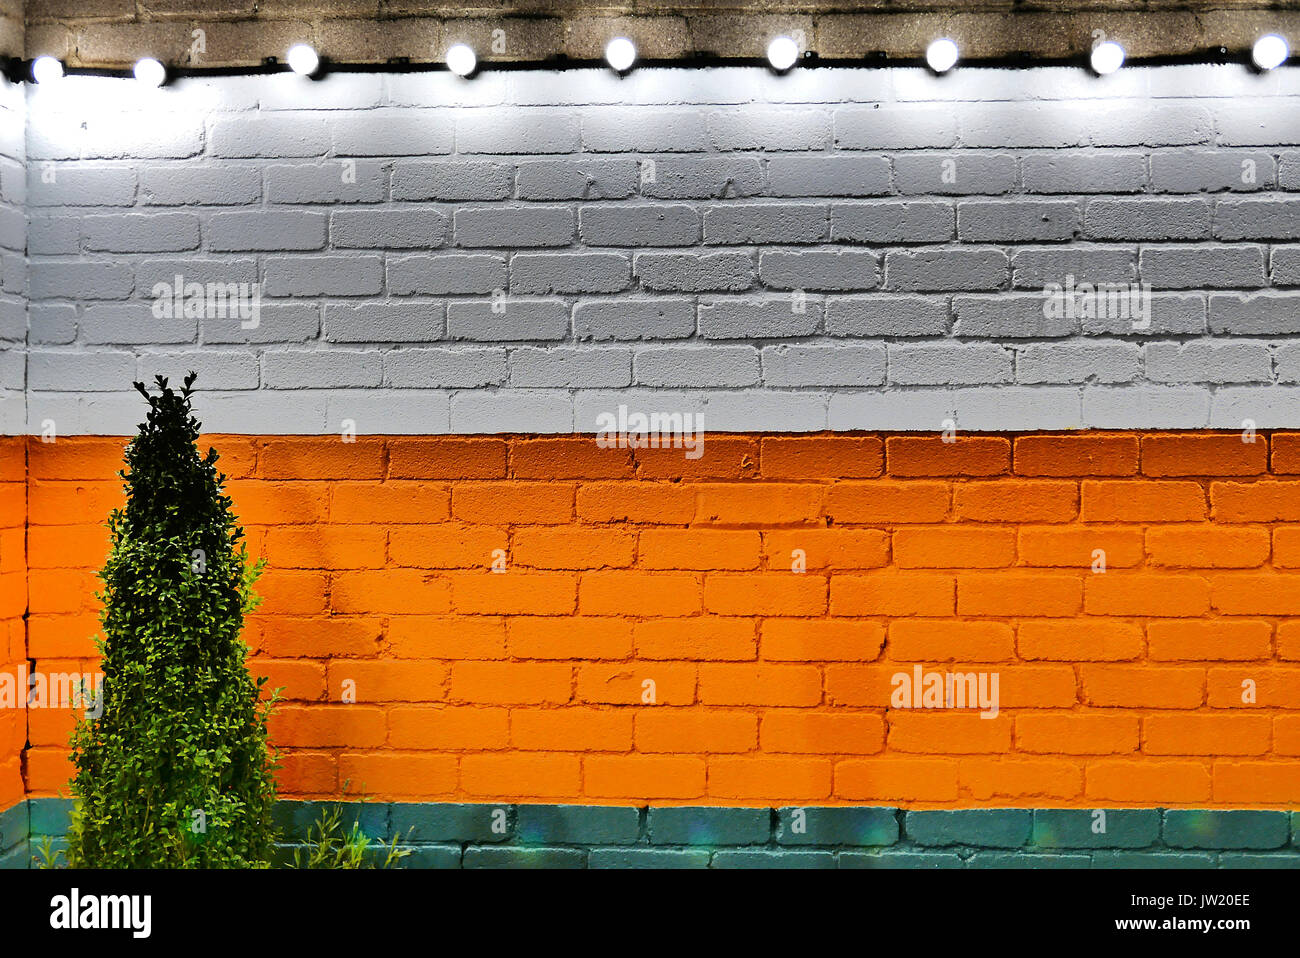 Arbusto pequeño contra la pared de ladrillo con el blanco, naranja y verde de franjas horizontales y cadena de luces encima Foto de stock